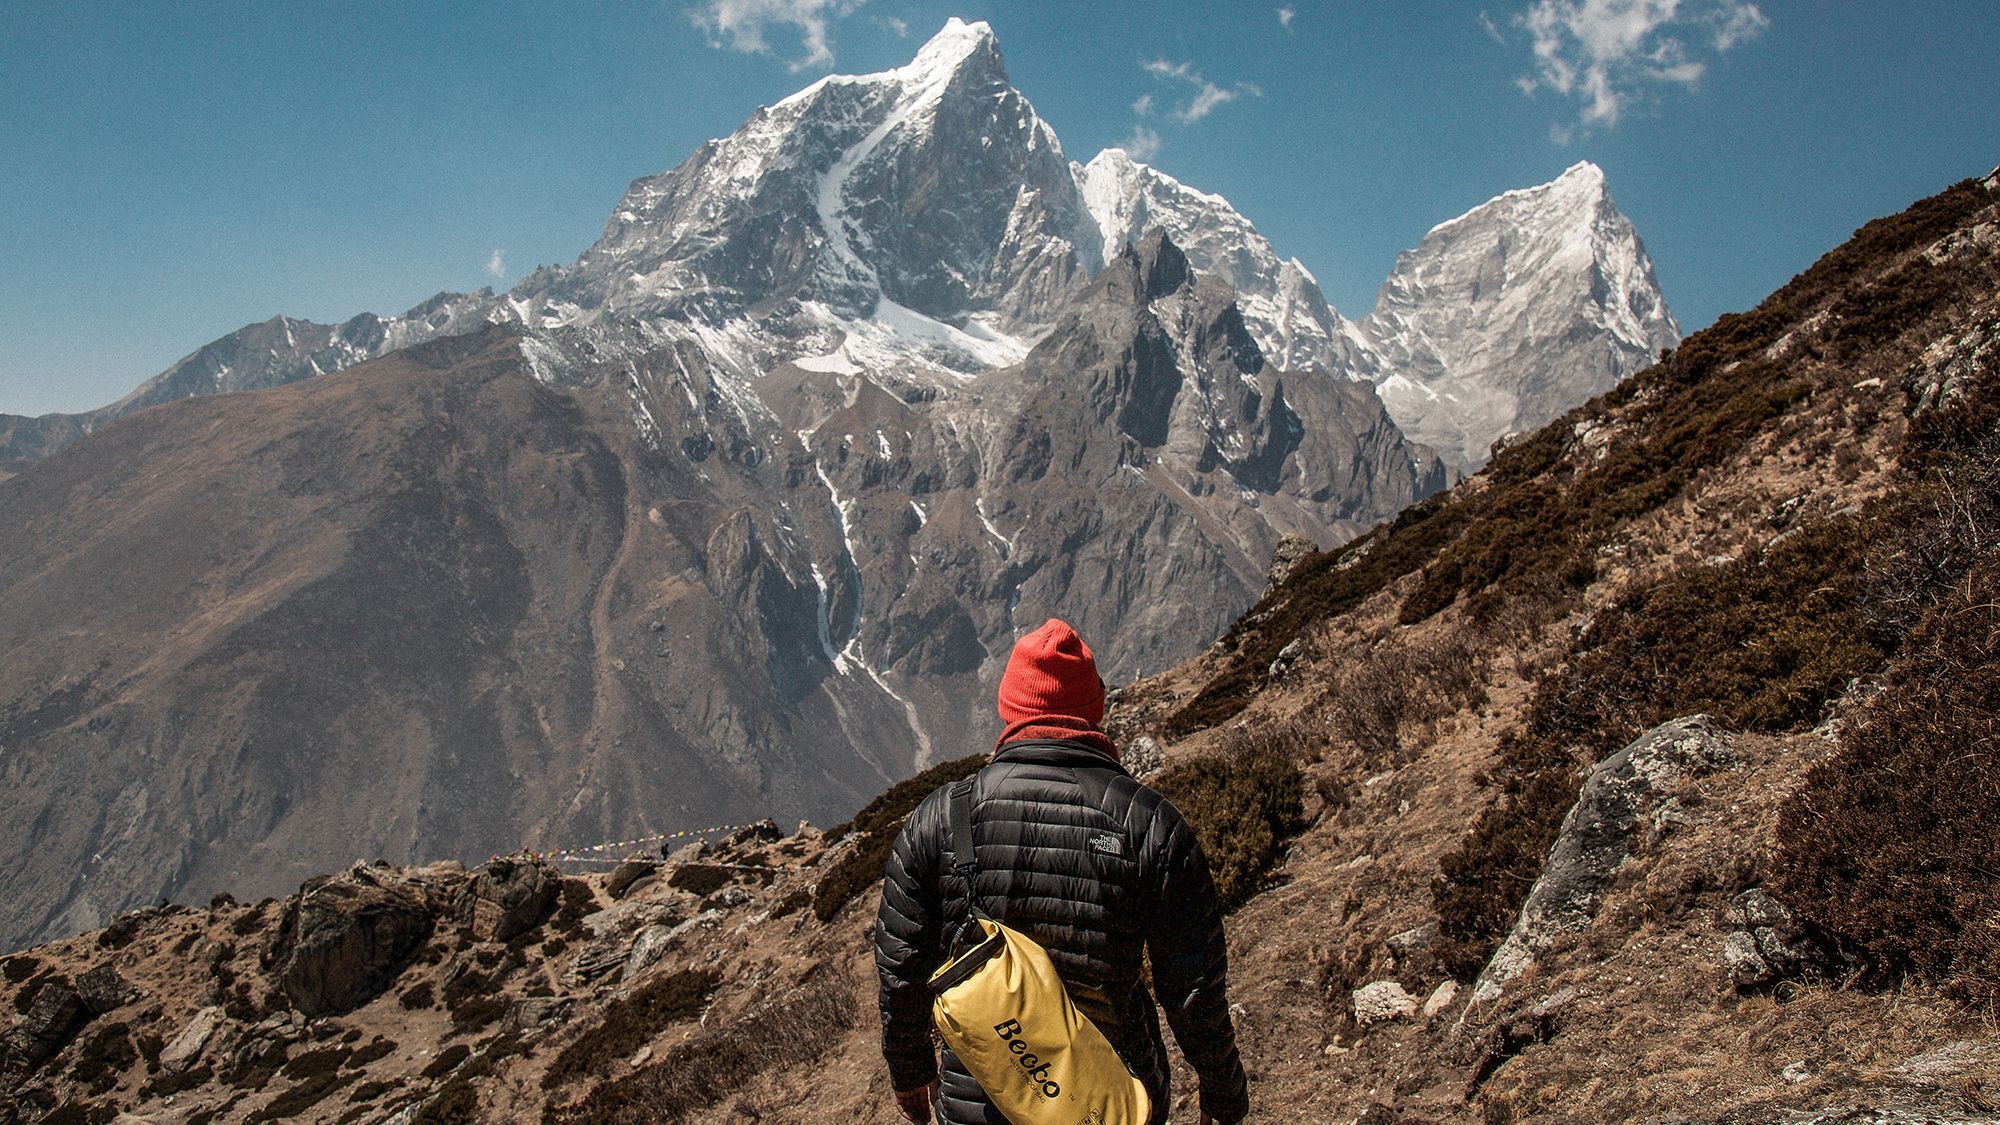 Підйом на Еверест закриють зі сторони Тибету через коронавірус, – ЗМІ 